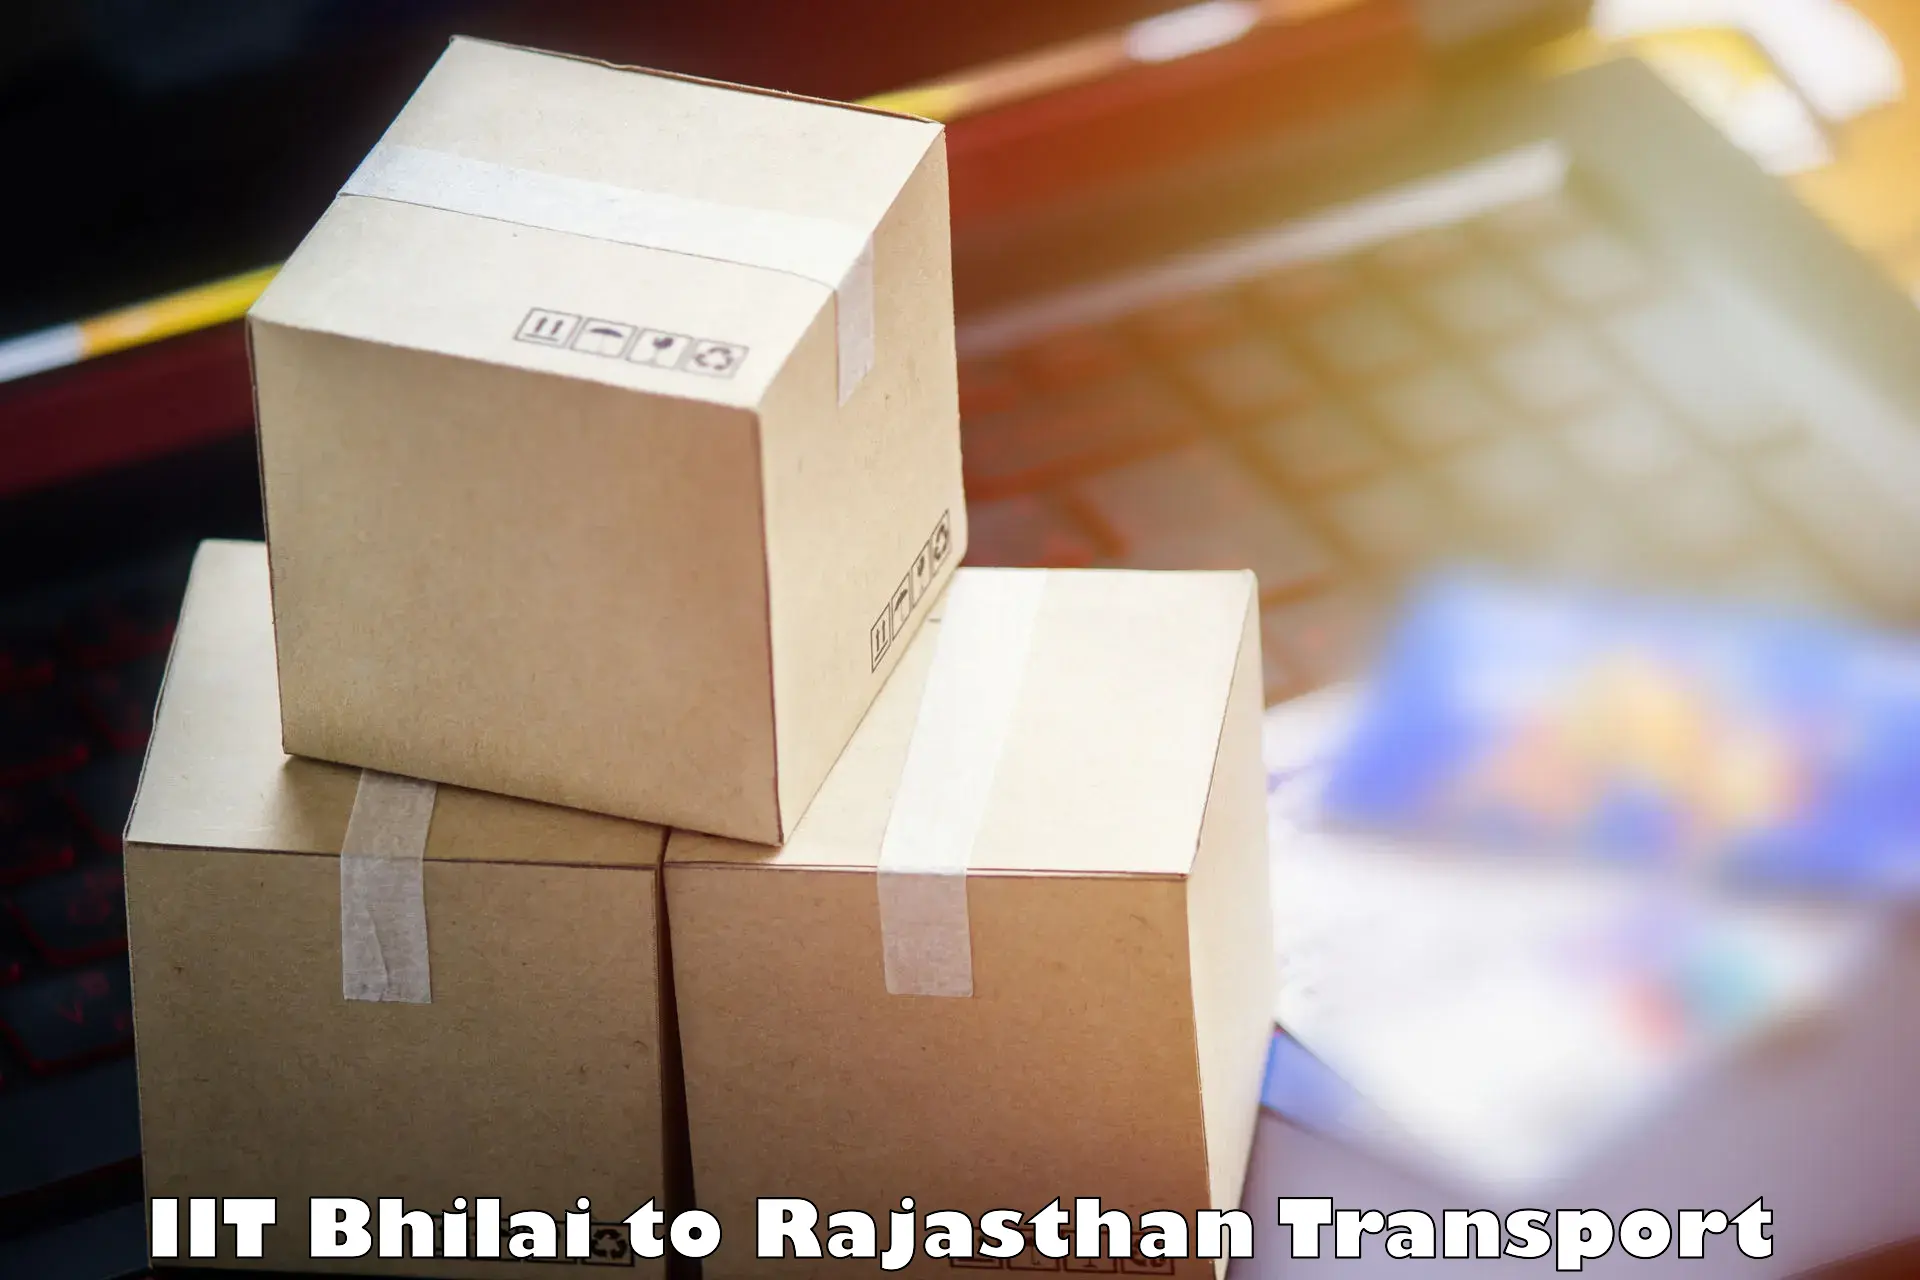 Shipping services IIT Bhilai to Beawar